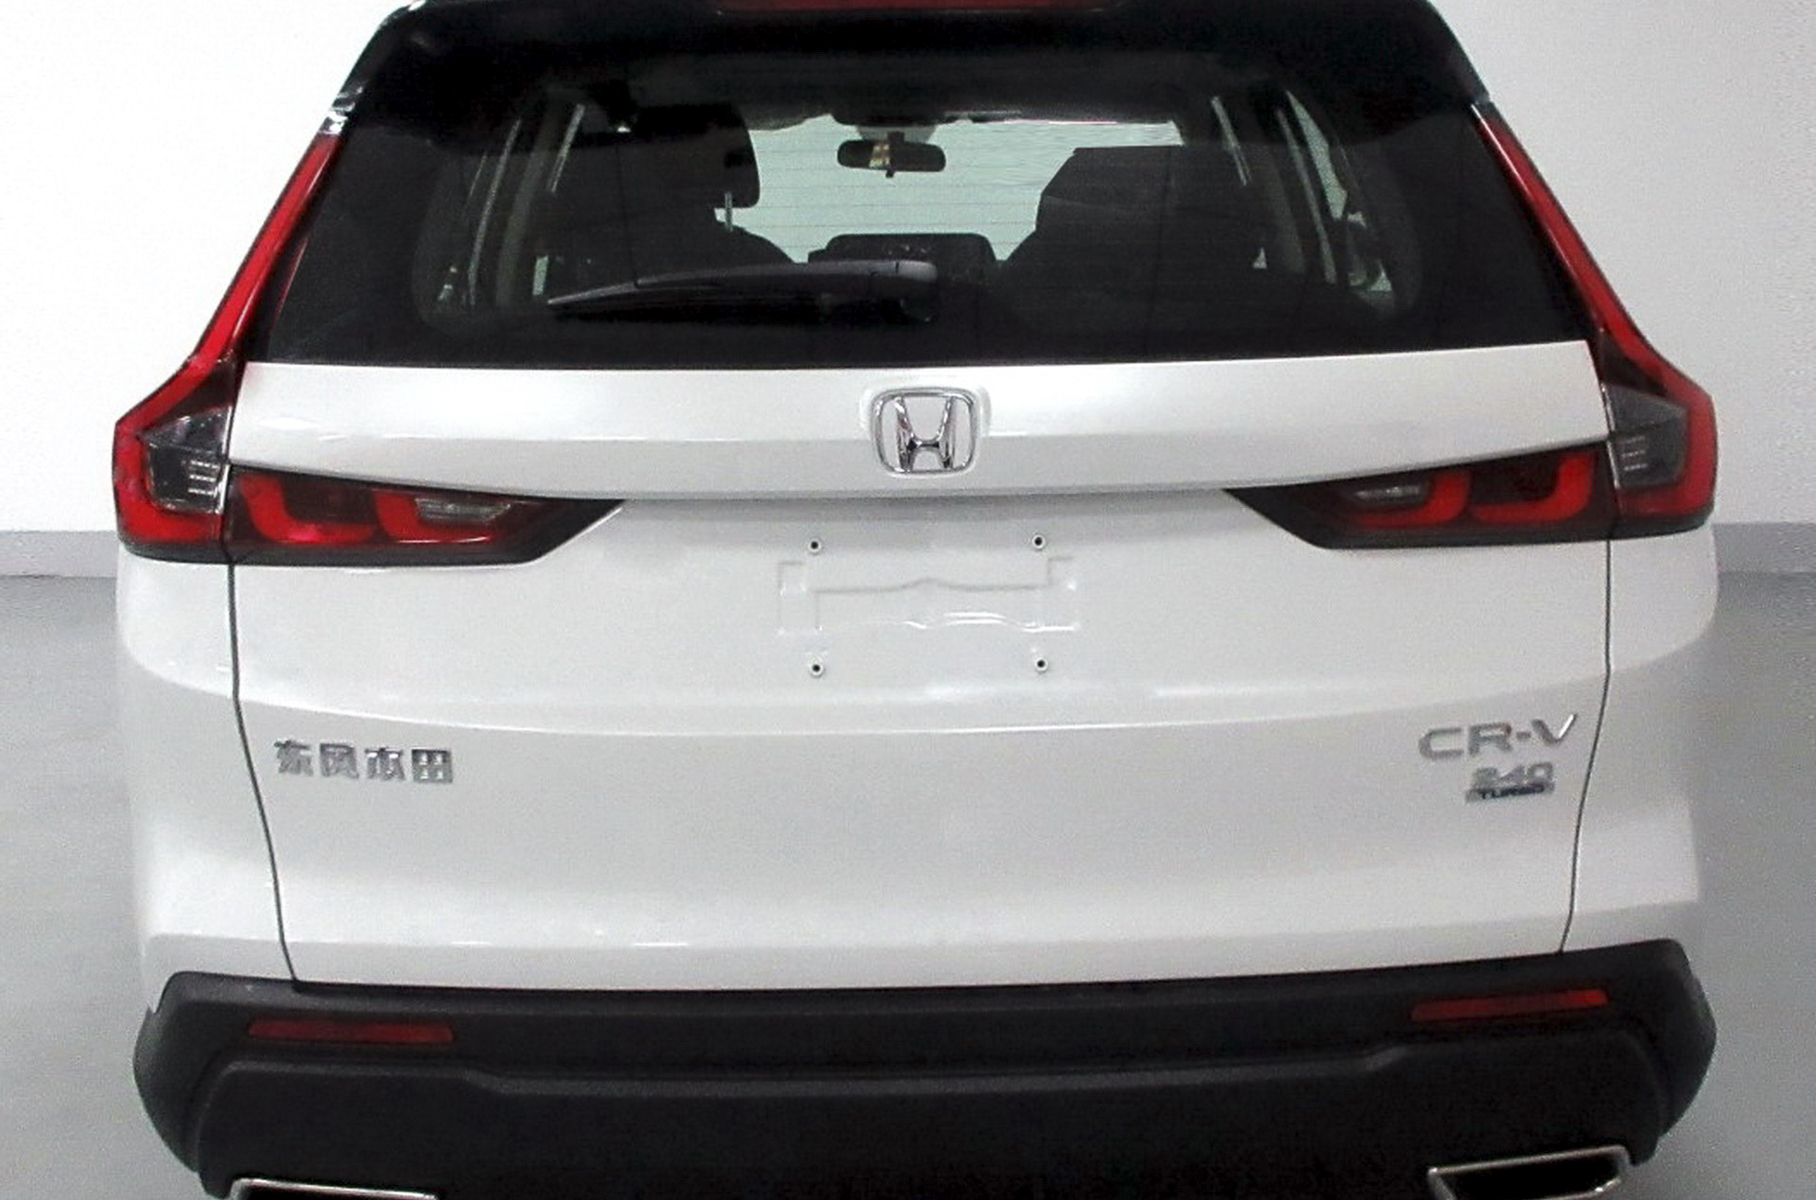 Honda CR-V ждут серьезные перемены в дизайне: новые фотографии